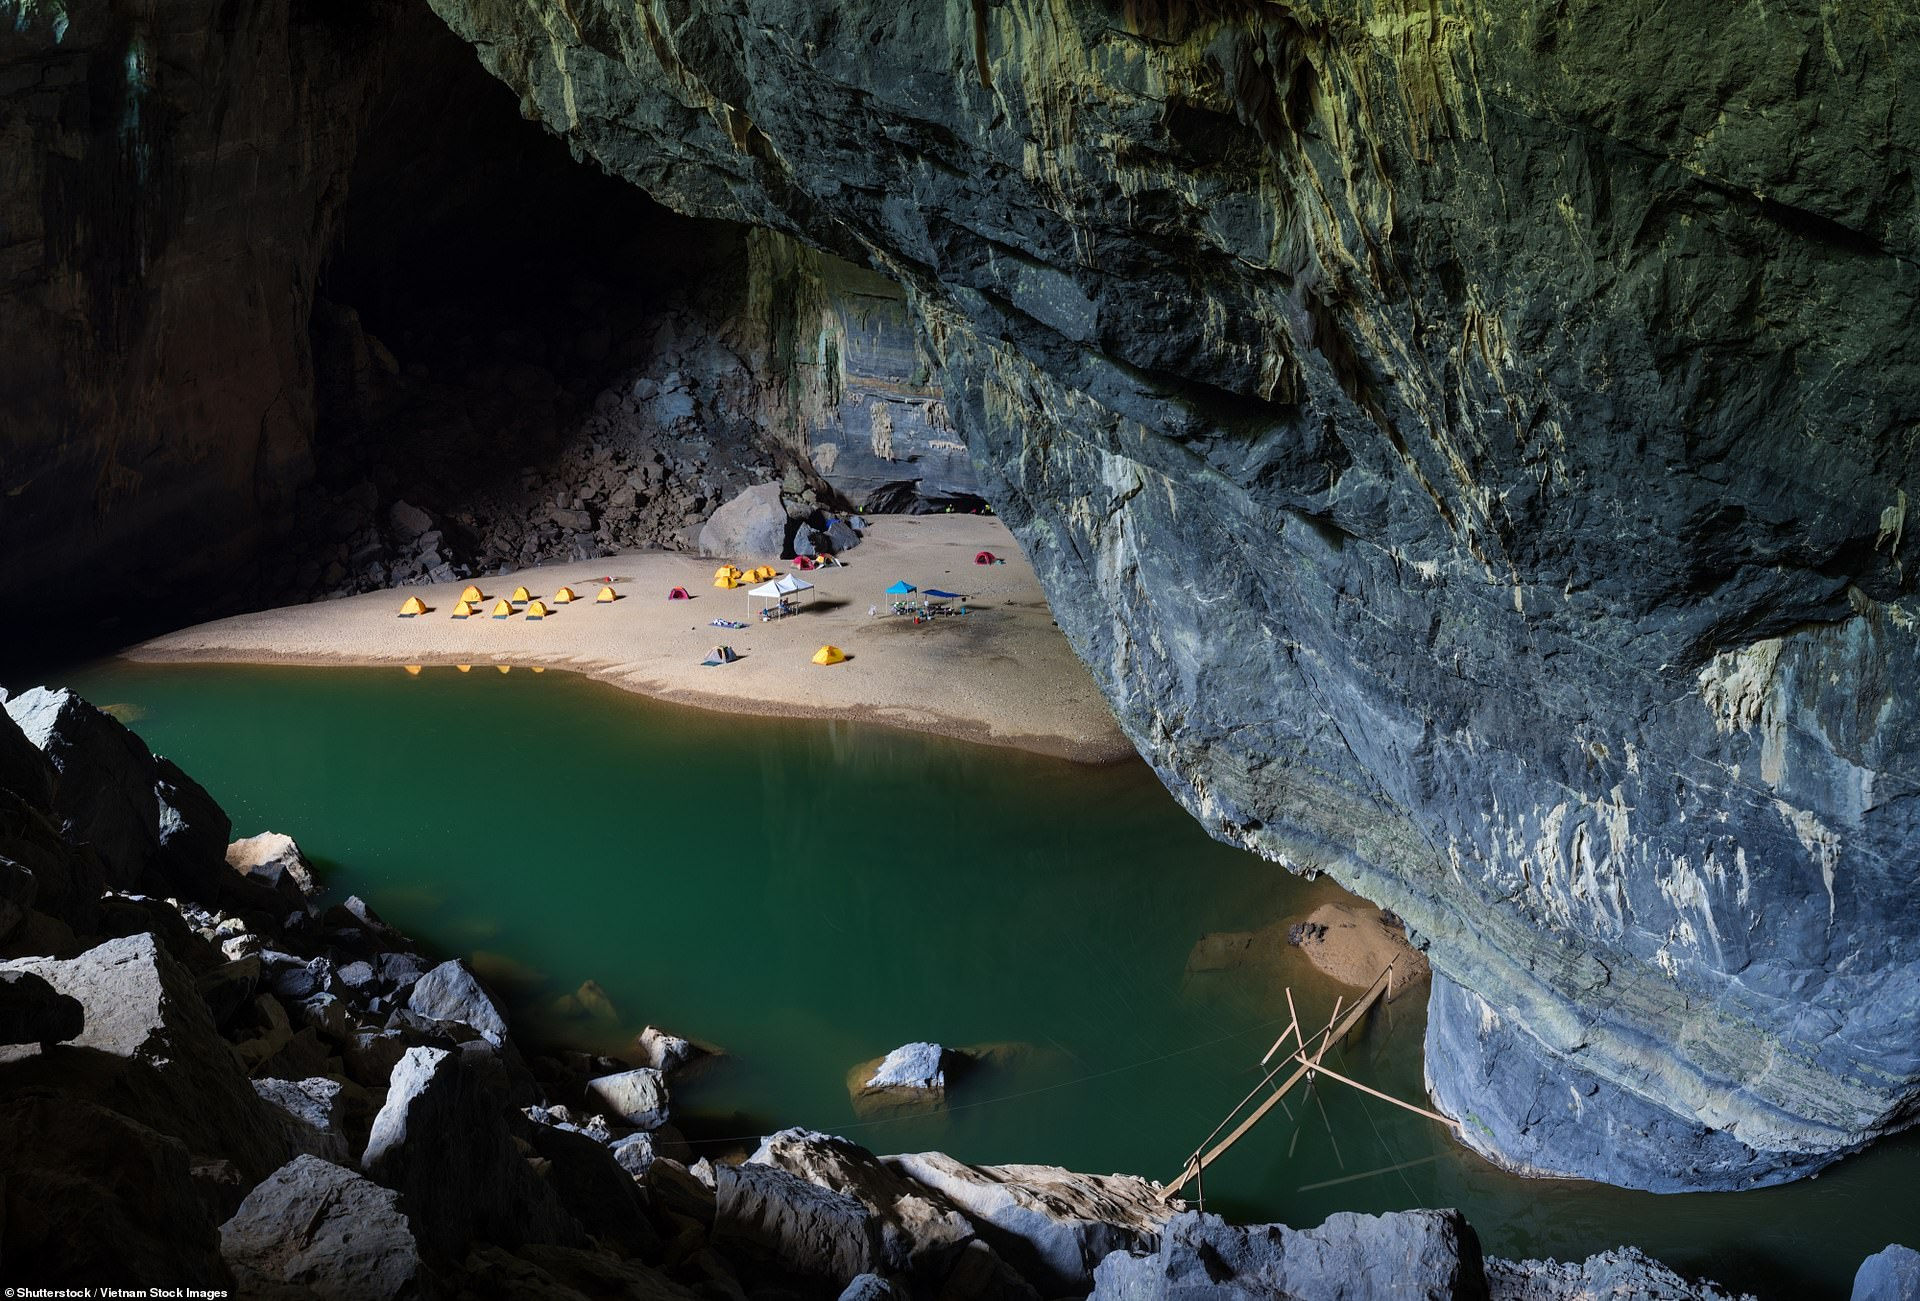 Lối vào hang Sơn Đoòng - hang động lớn nhất thế giới, nằm trong Di sản thiên nhiên thế giới Phong Nha-Kẻ Bàng ở miền Trung Việt Nam. Hang Sơn Đoòng mở cửa cho công chúng vào tham quan kể từ năm 2013.